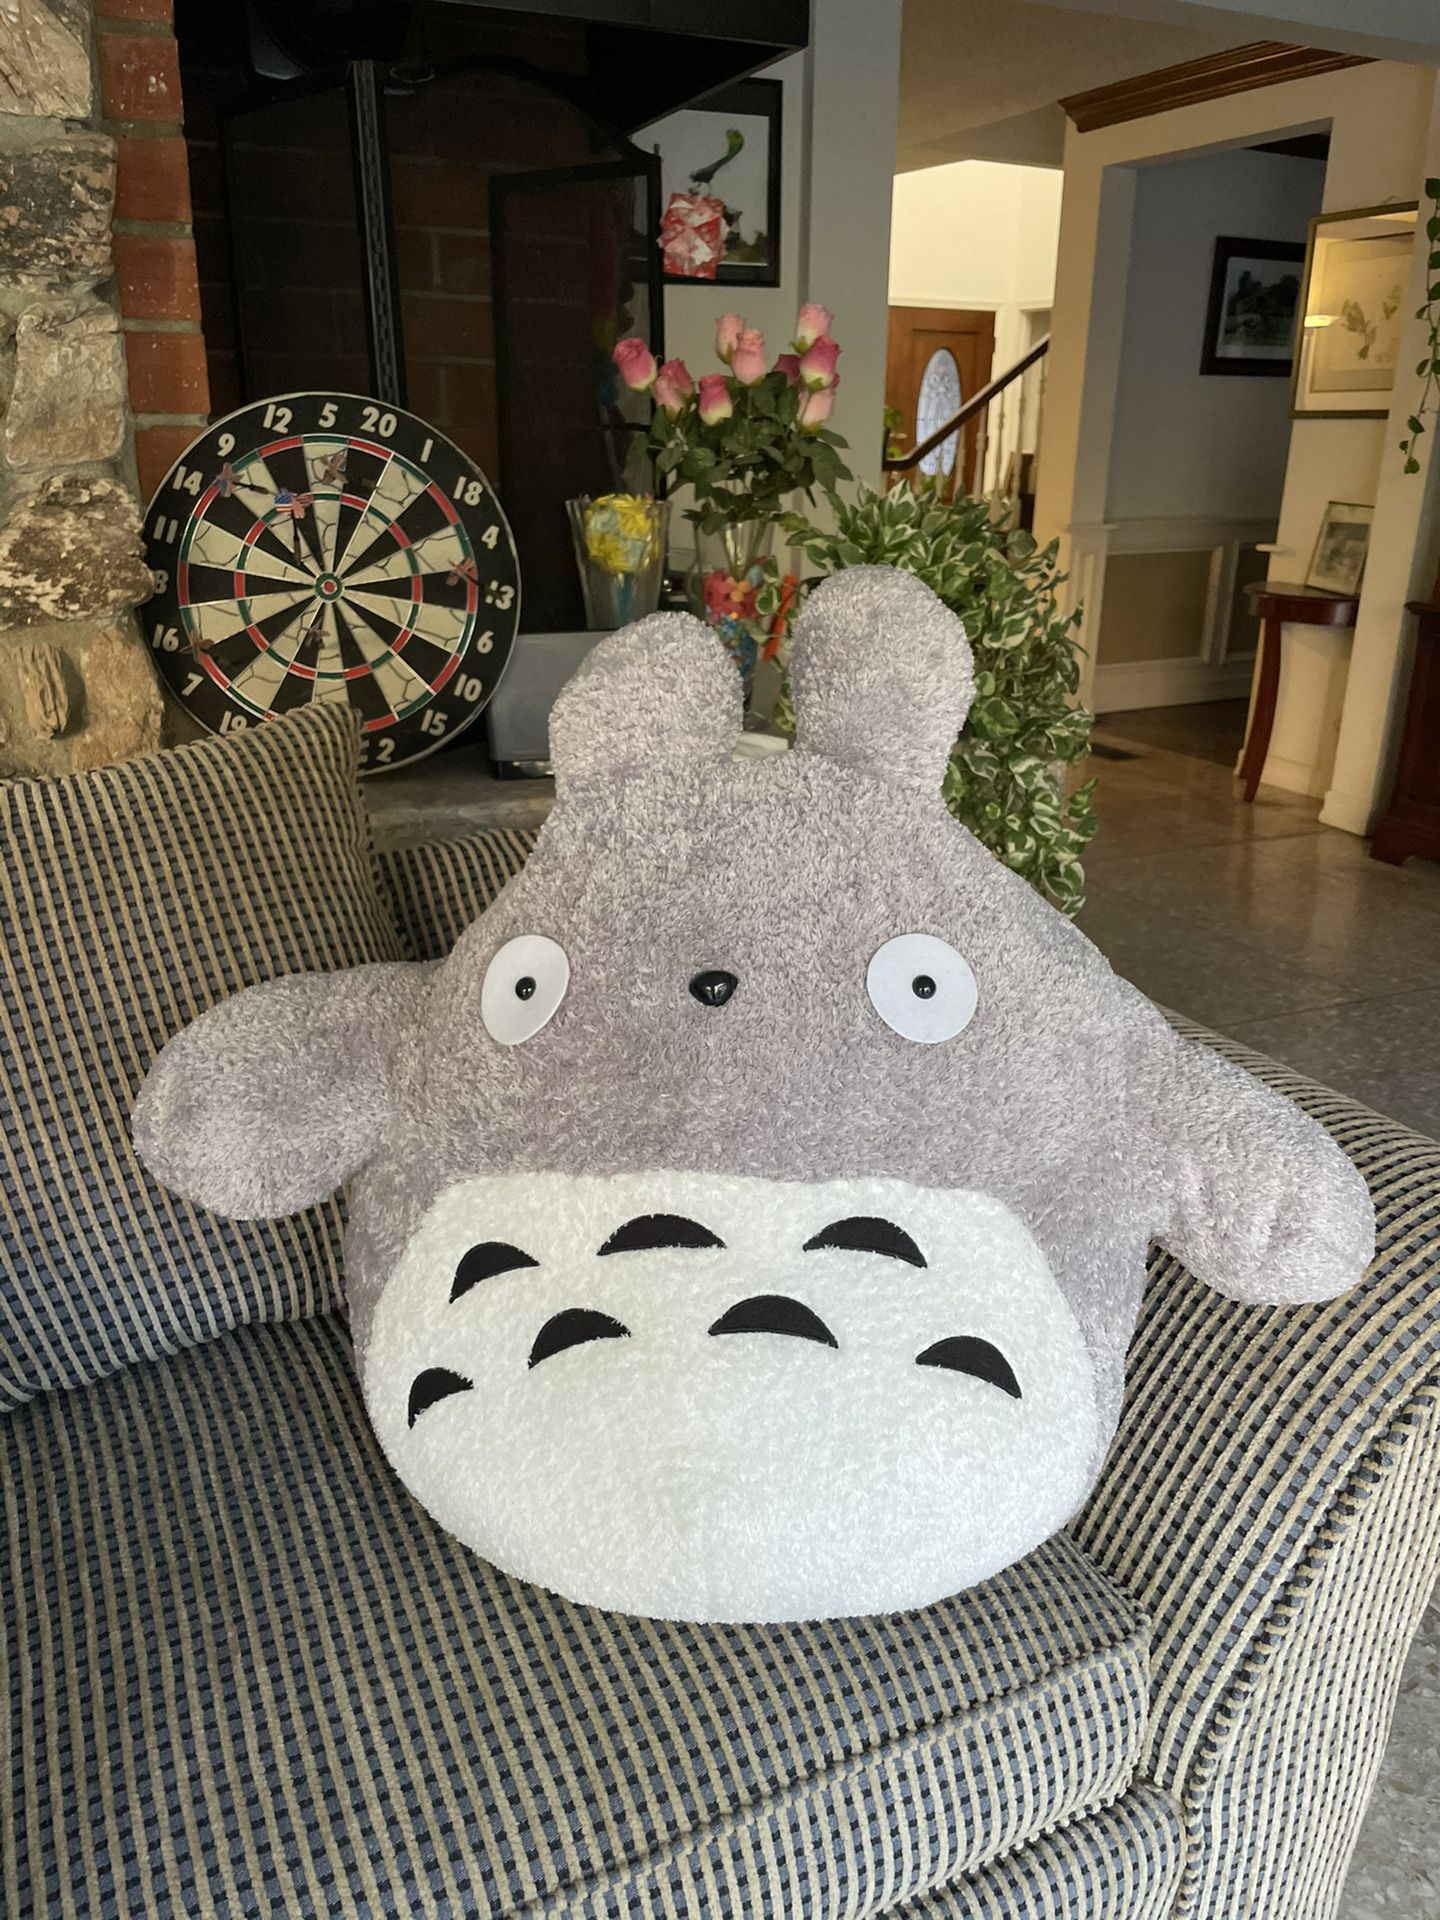 New Rare Giant Totoro Plush Toy